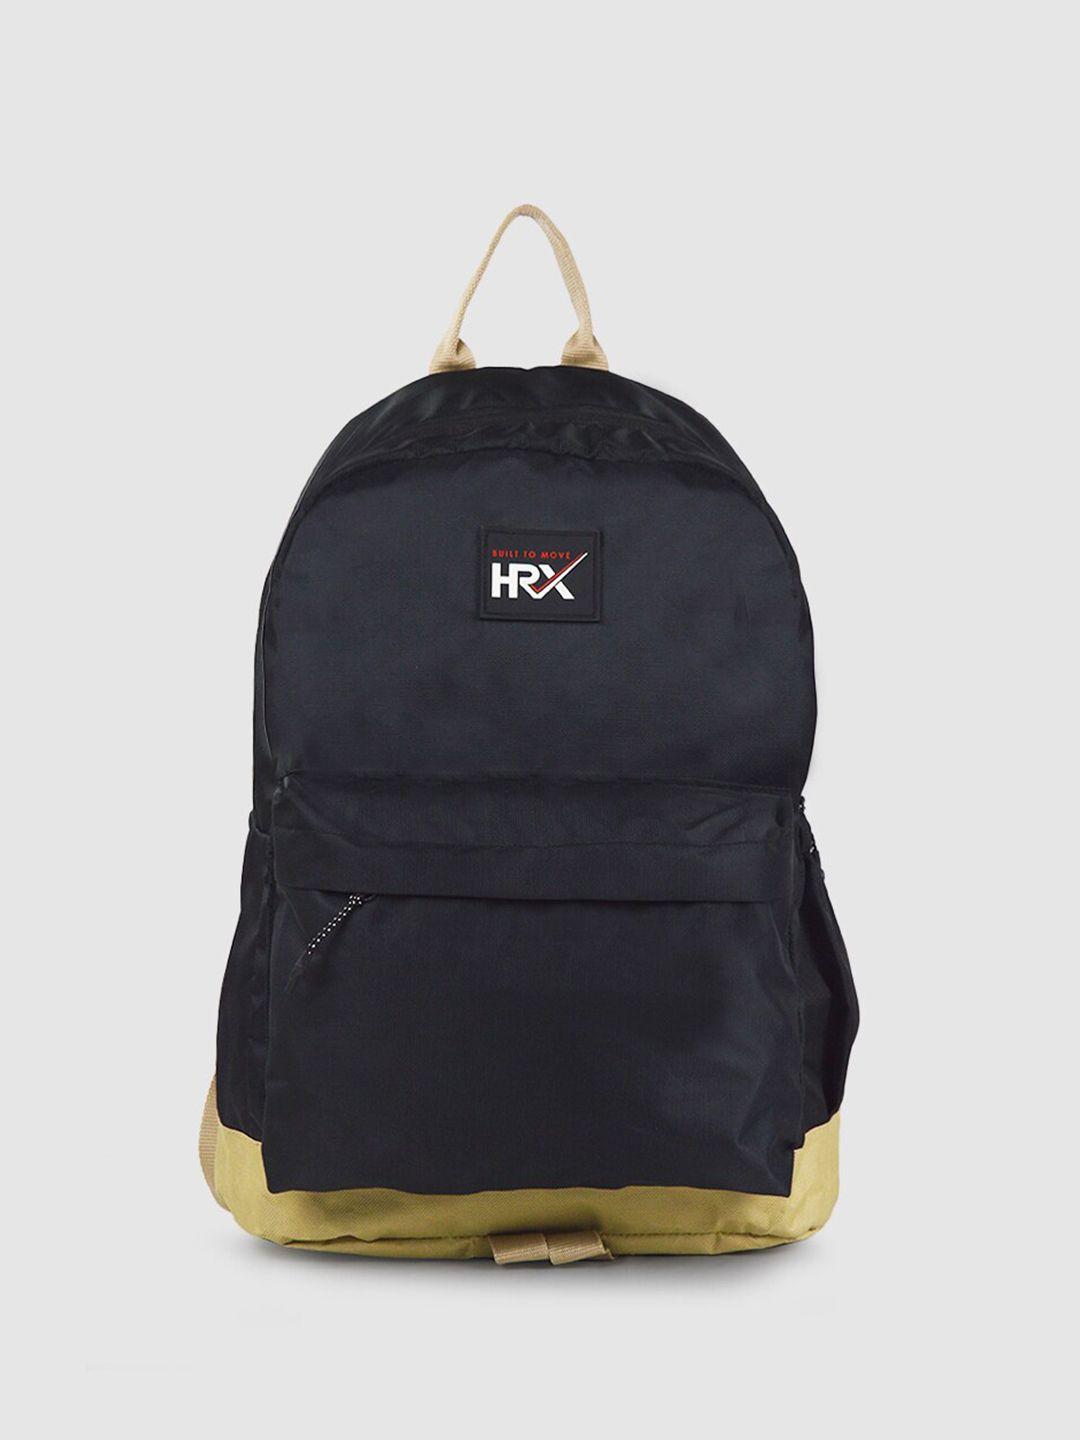 hrx-by-hrithik-roshan-unisex-black-backpack